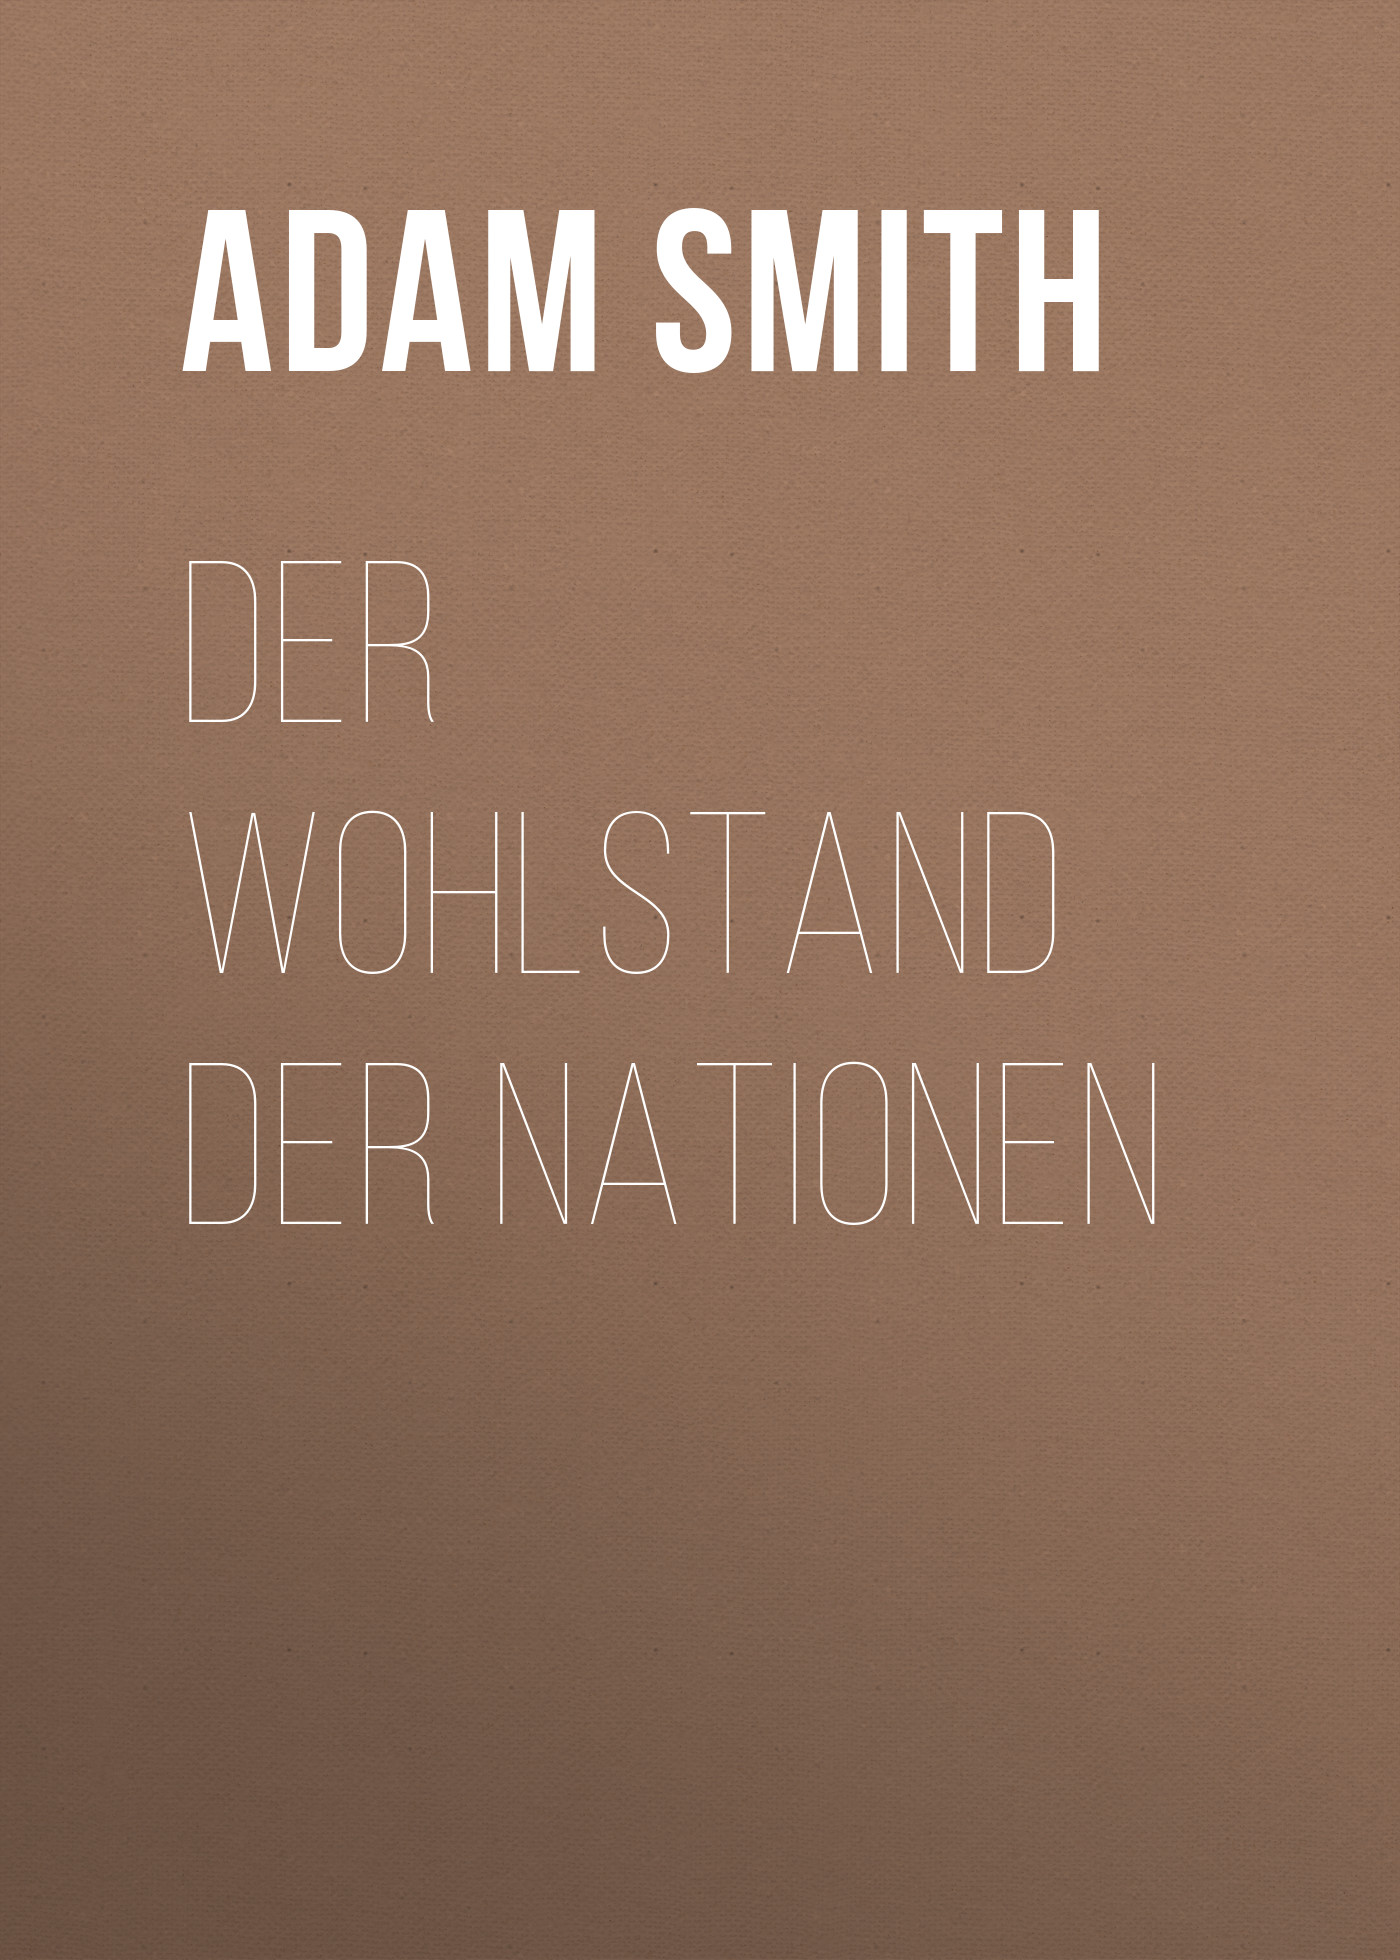 Книга Der Wohlstand der Nationen из серии , созданная Adam Smith, может относится к жанру Зарубежная классика. Стоимость электронной книги Der Wohlstand der Nationen с идентификатором 48632252 составляет 0 руб.